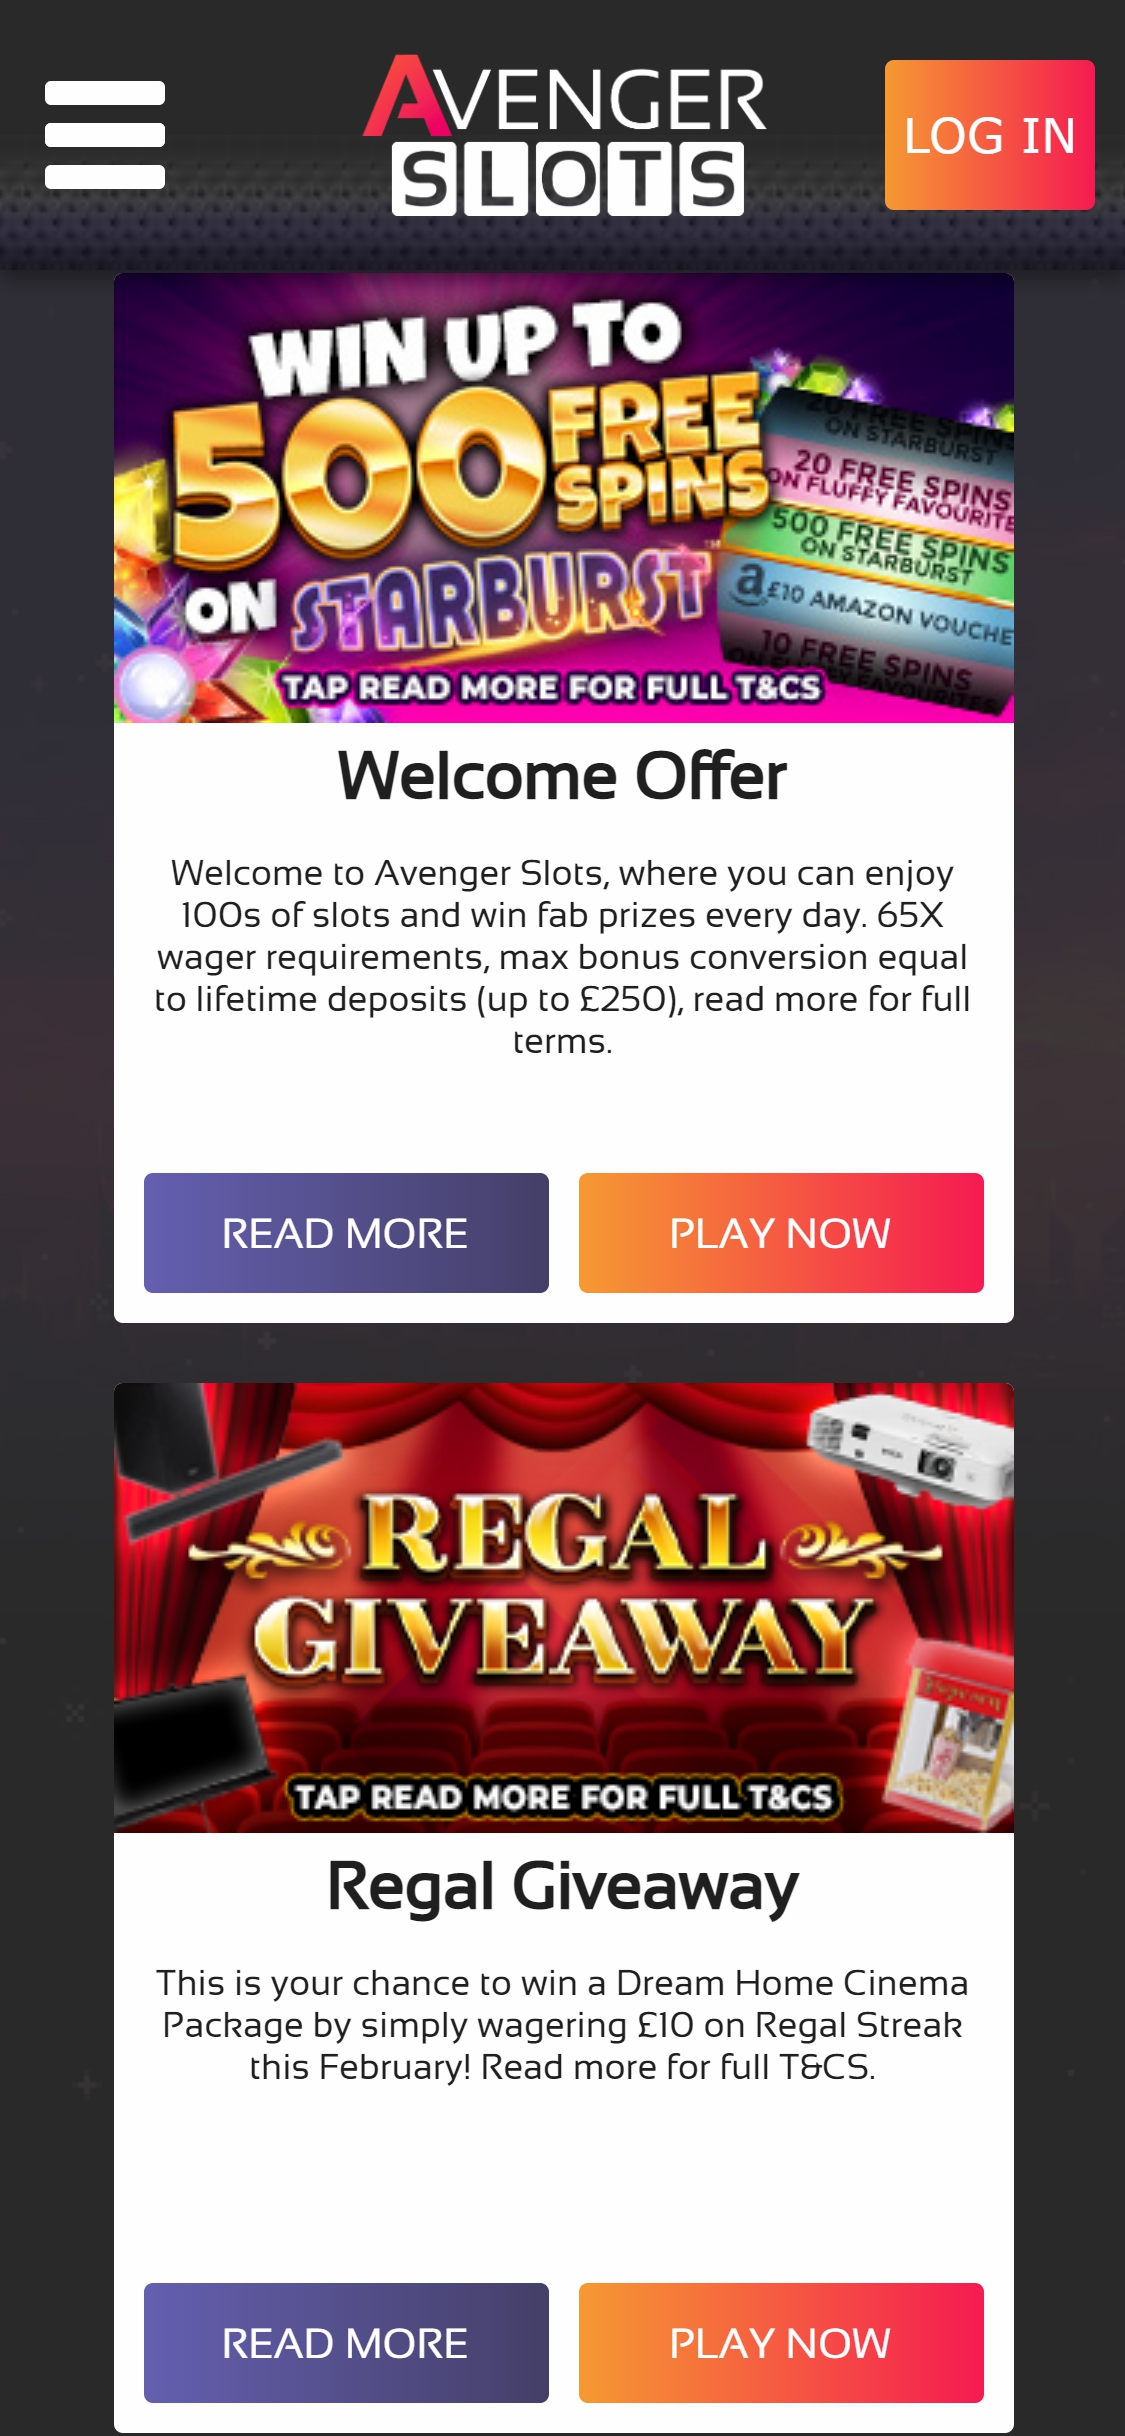 Avenger Slots Casino Mobile No Deposit Bonus Review